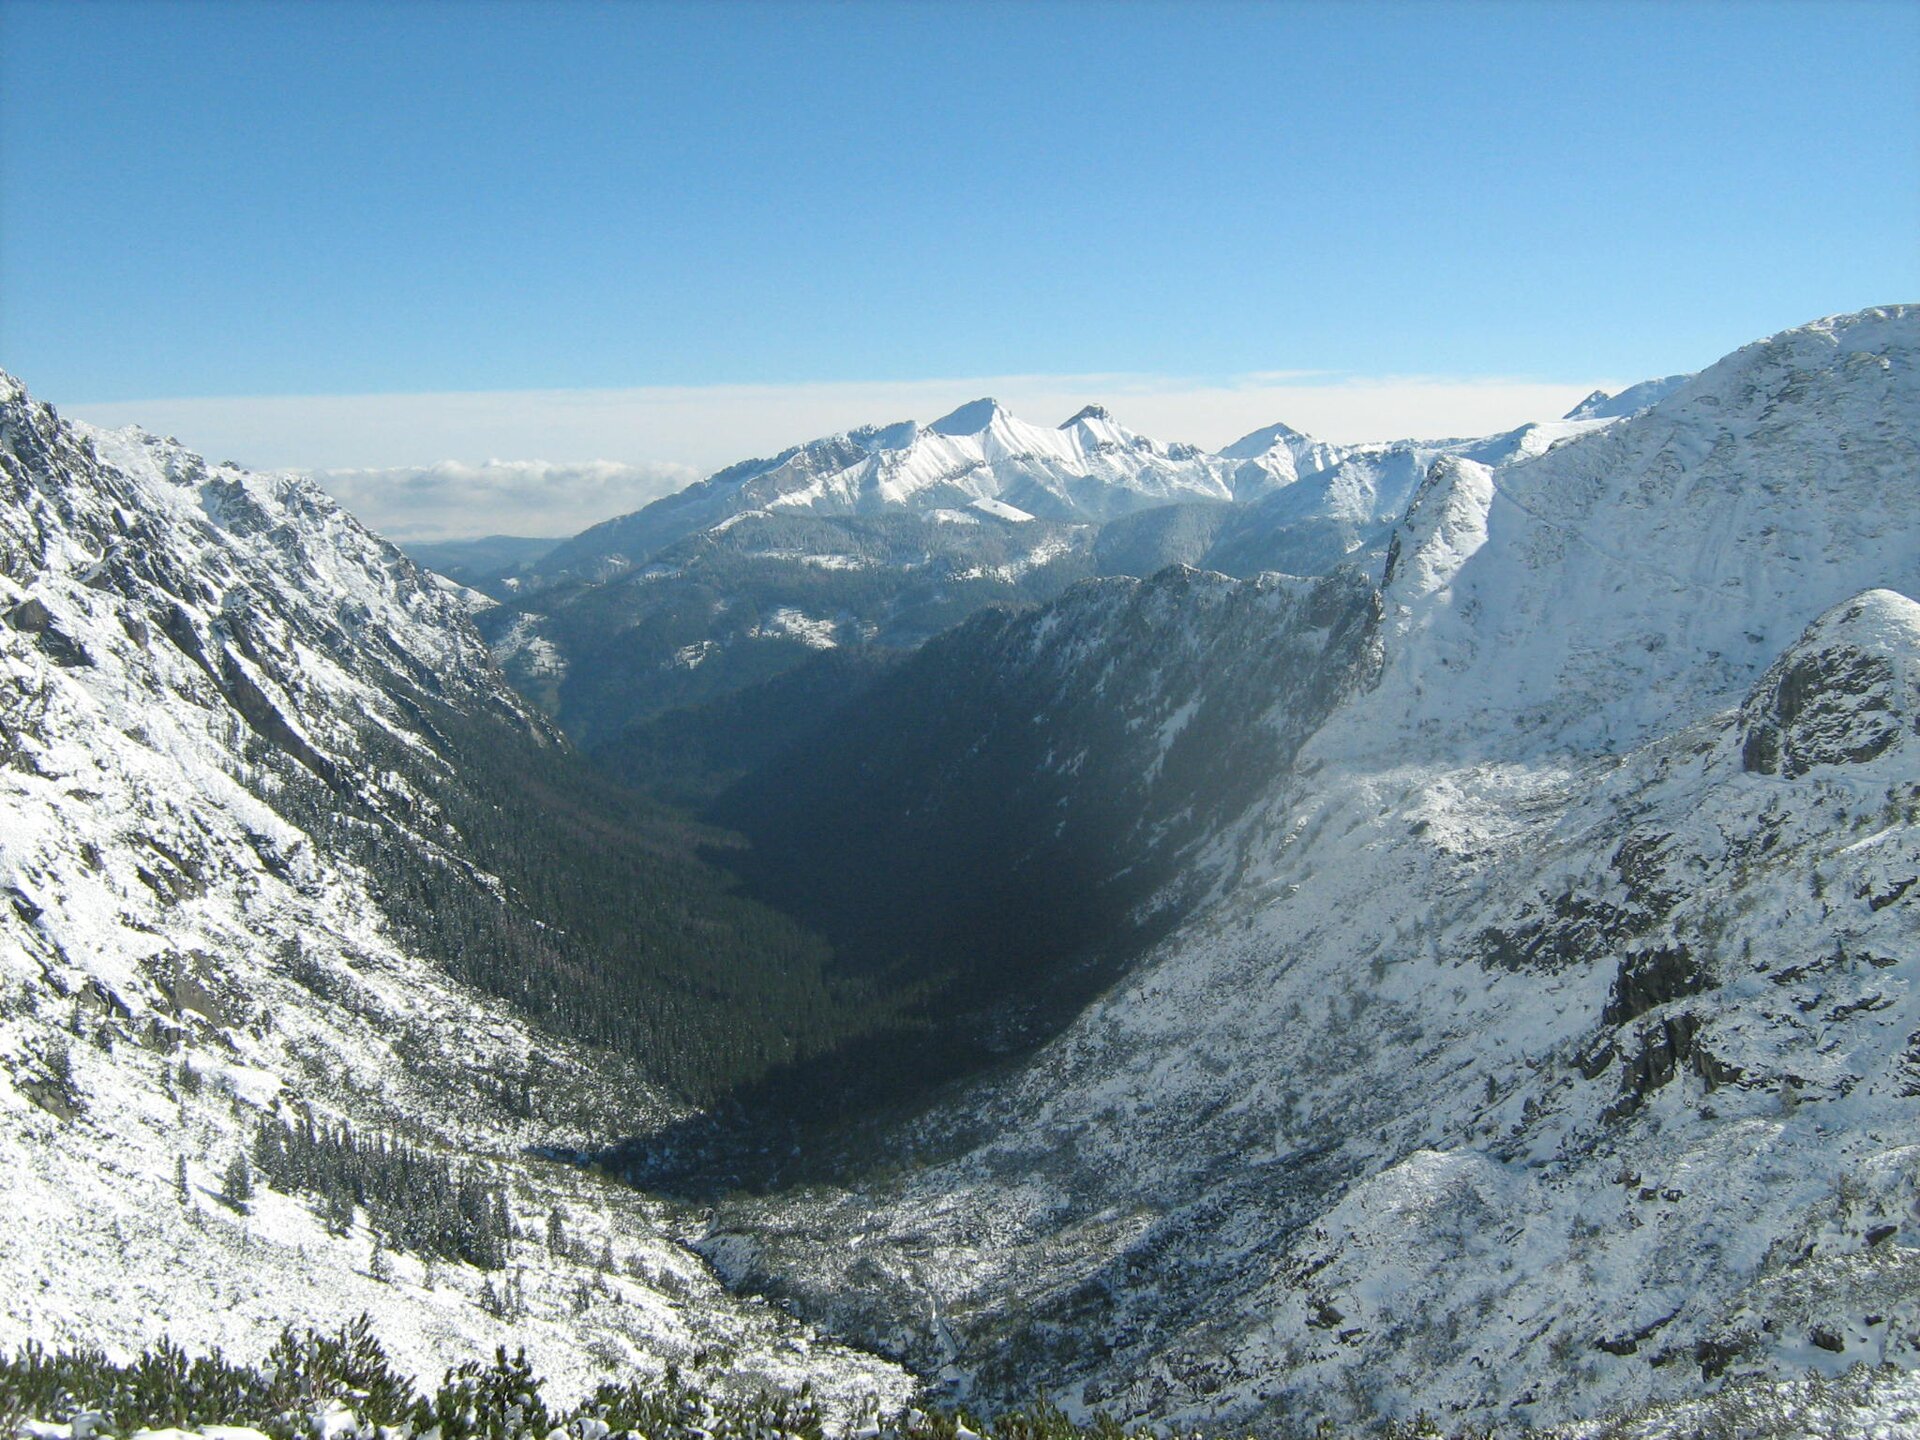 Fotografia prezentuje ośnieżone stoki górskie, które otaczają dookoła dolinę.